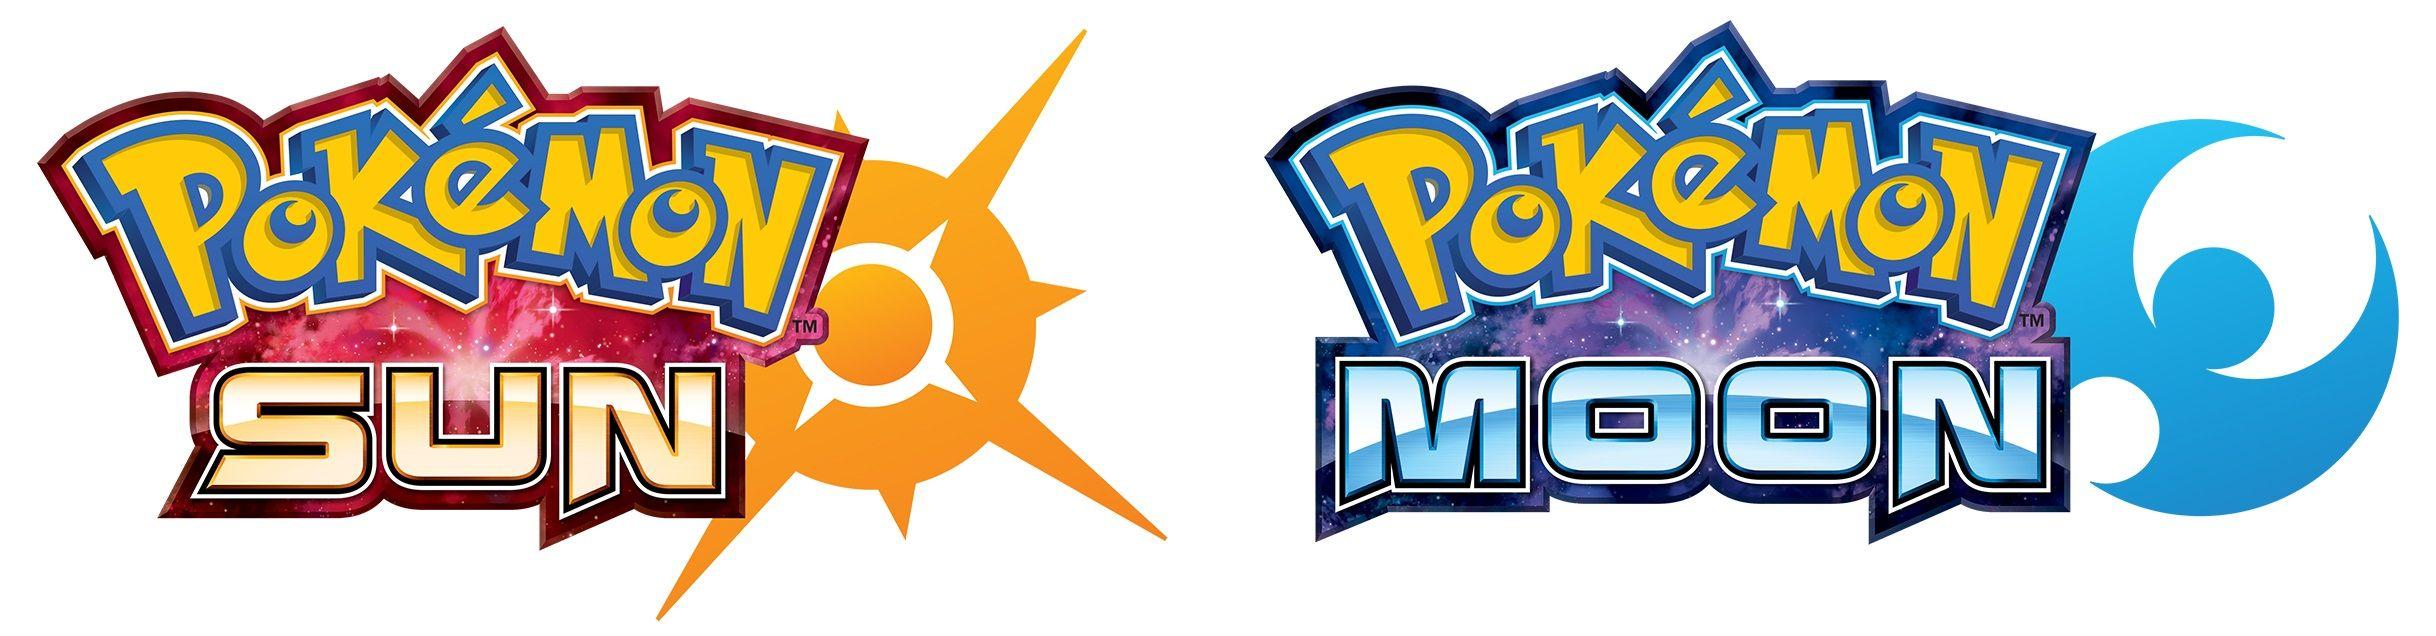 Clear Moon Logo - New Pokémon Sun and Pokémon Moon Game Community